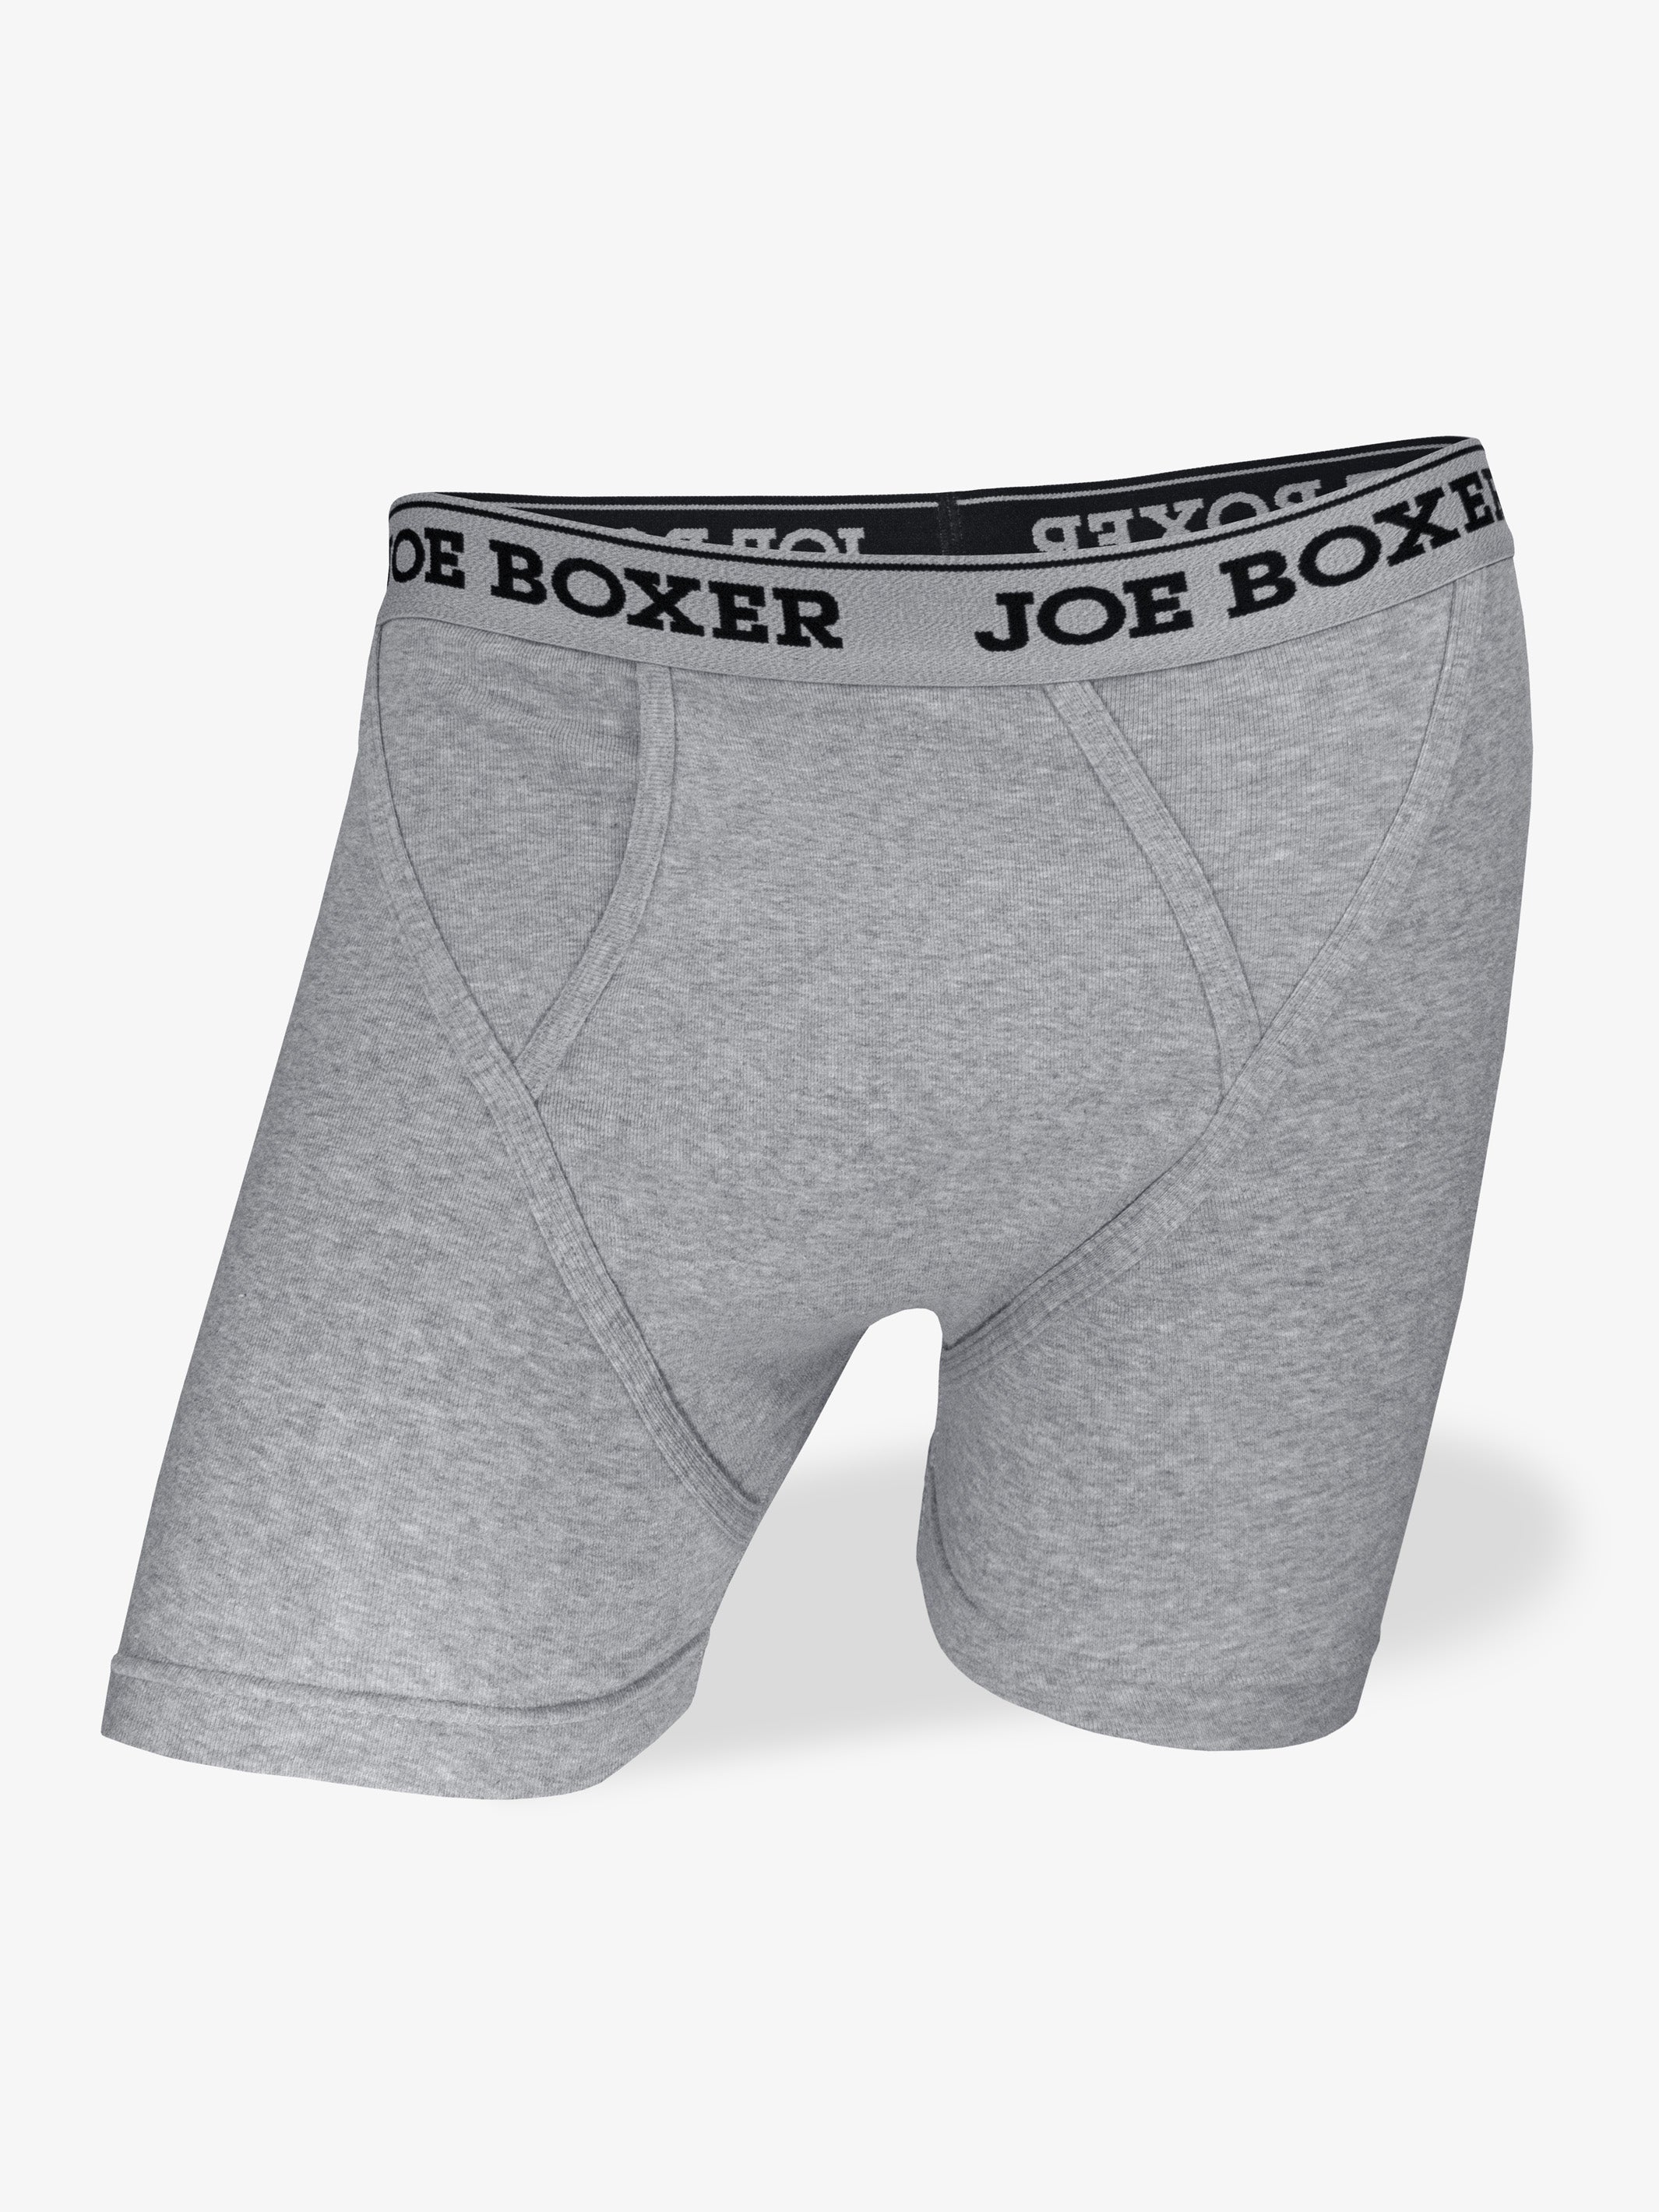 Joe Boxer Men's Boxer Briefs 4-pack, Black, XXL, 100% Cotton